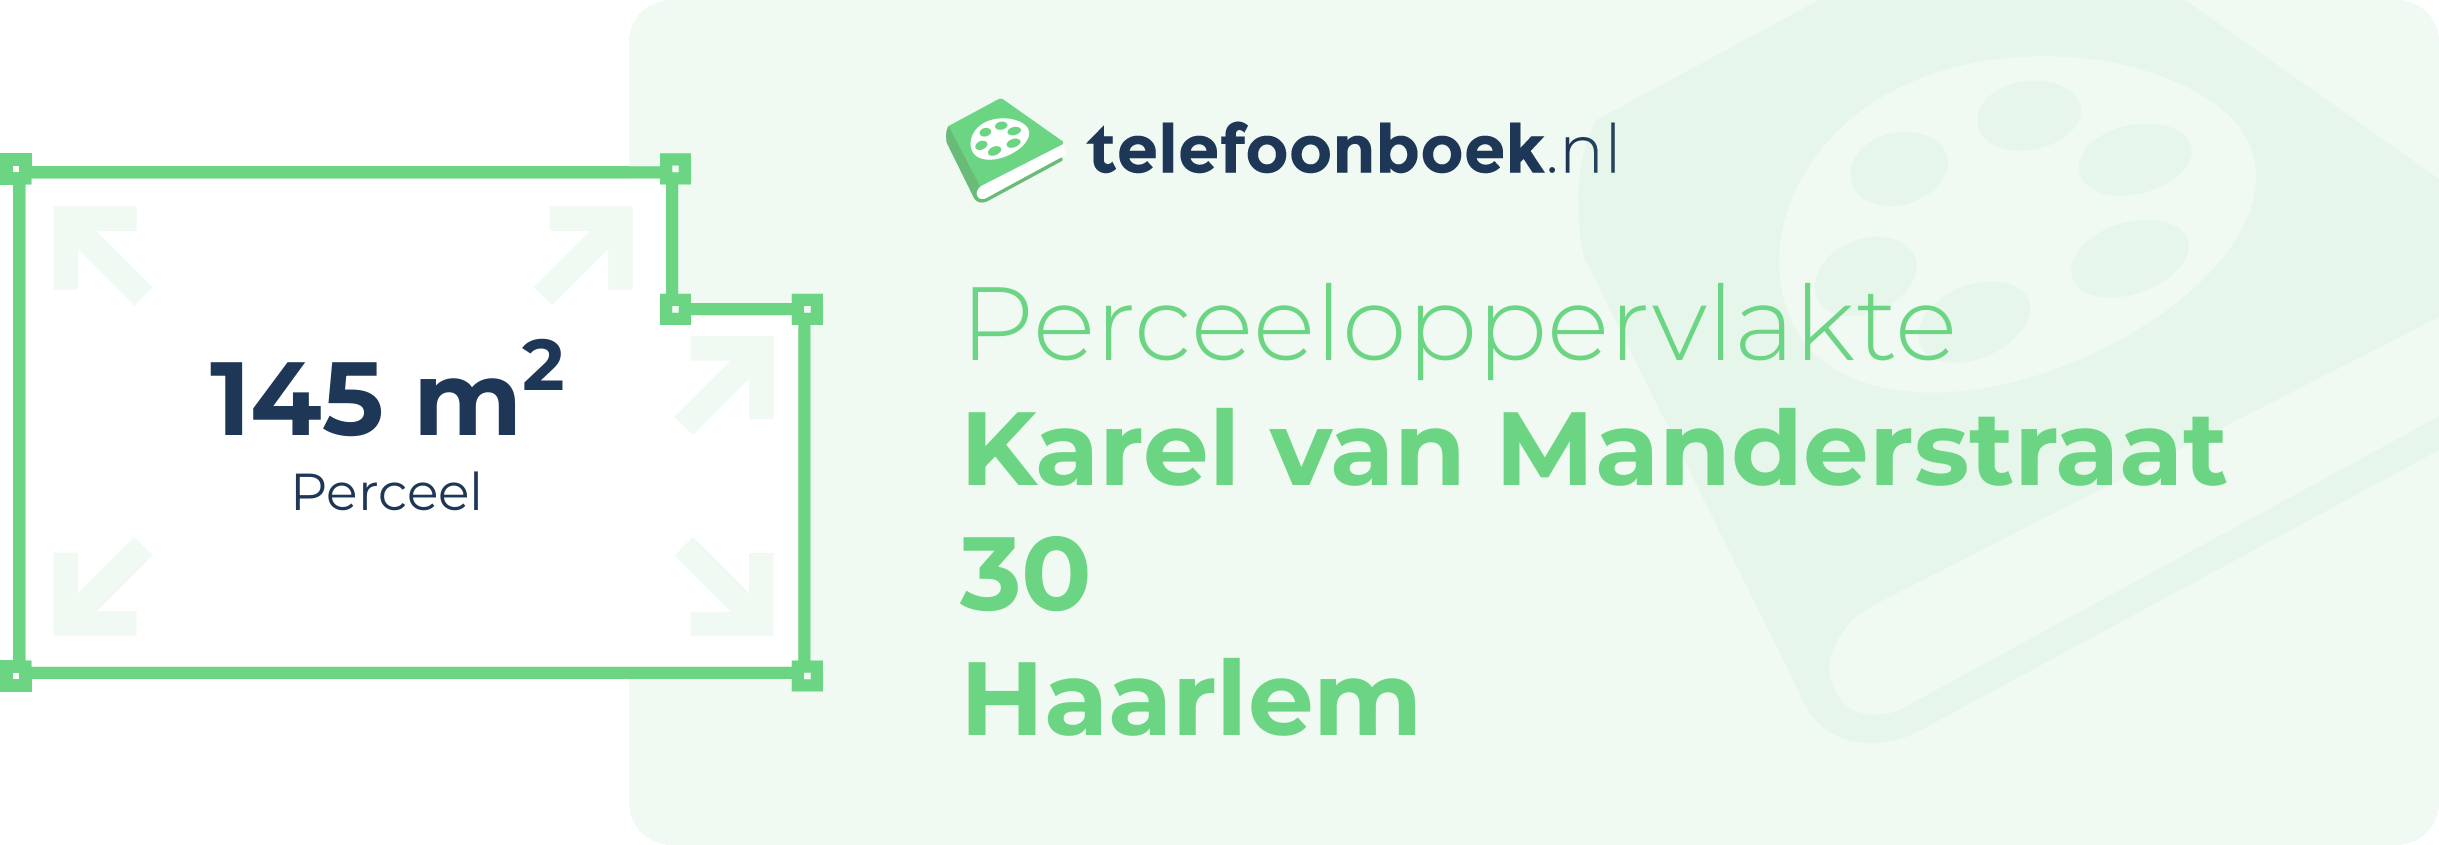 Perceeloppervlakte Karel Van Manderstraat 30 Haarlem